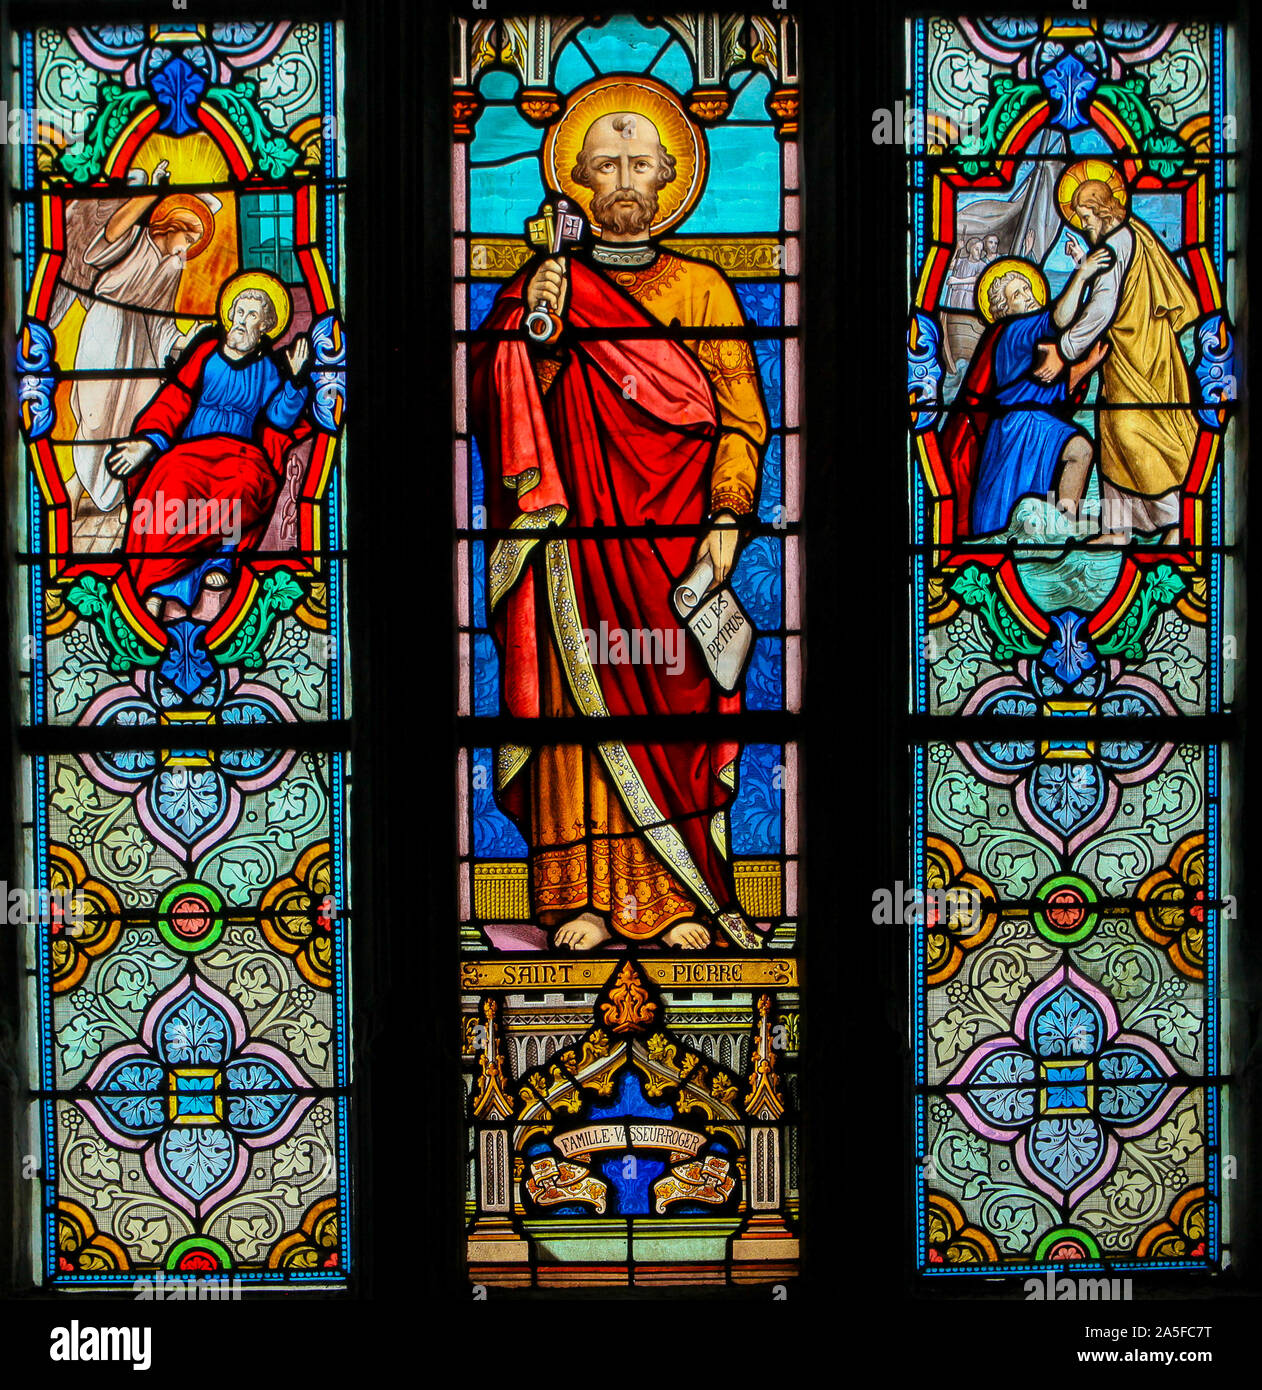 Vetro colorato nella chiesa di St Martin in St Valery sur Somme, Francia, raffigurante San Pietro o Petrus Foto Stock